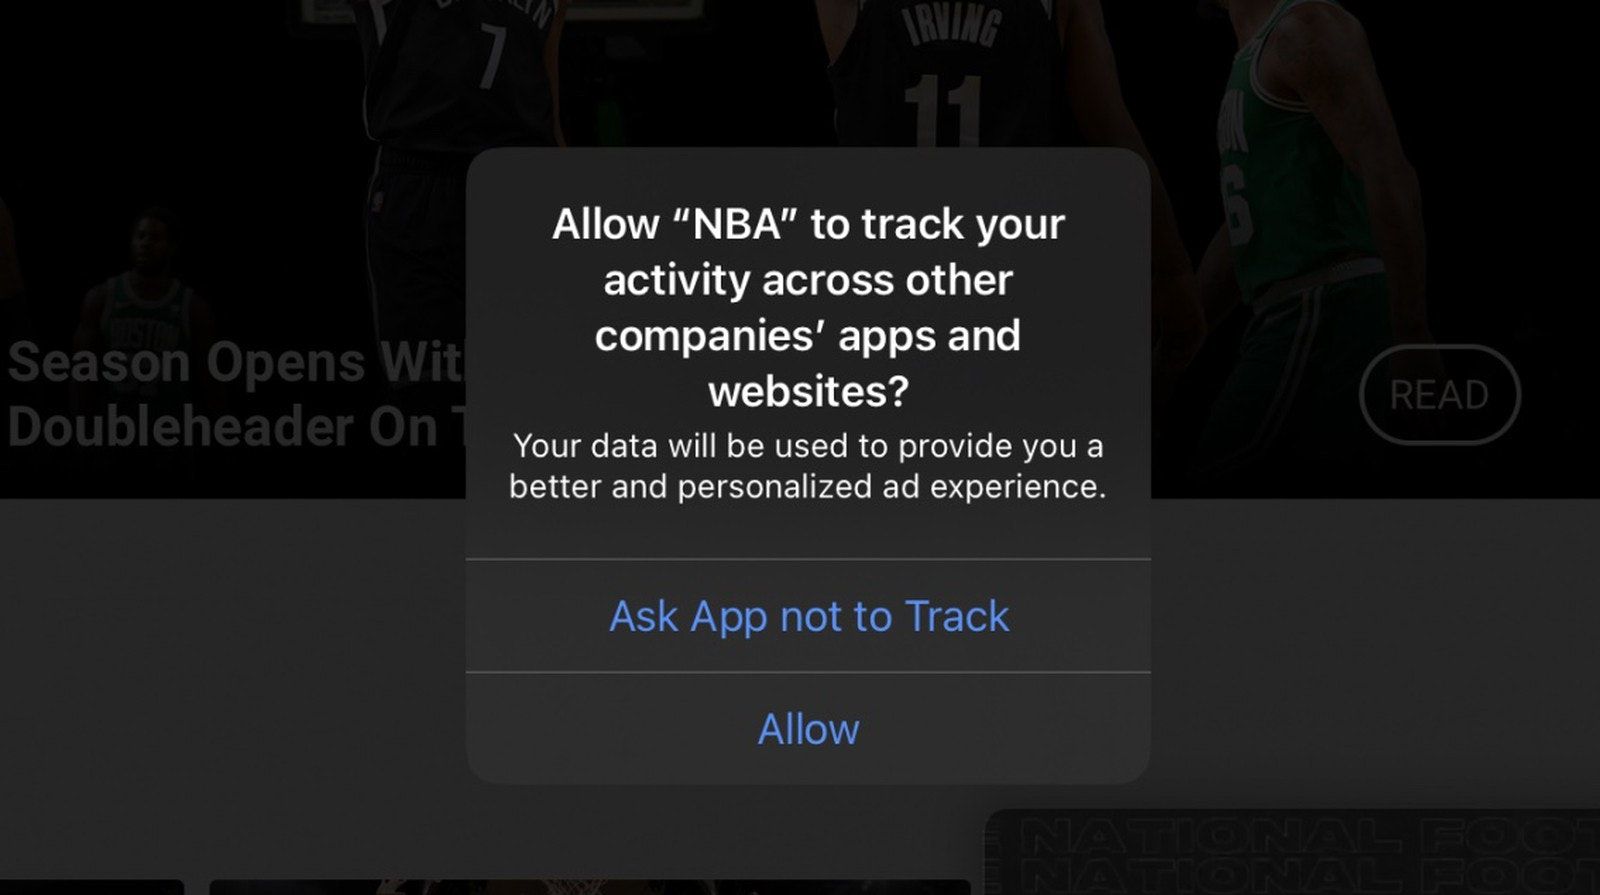 تطبيق دوري كرة السلة الأميركية للمحترفين NBA يطلب إذن جمع بيانات استخدام التطبيقات والمواقع الإلكترونية على هواتف آيفون - ماك رامورز